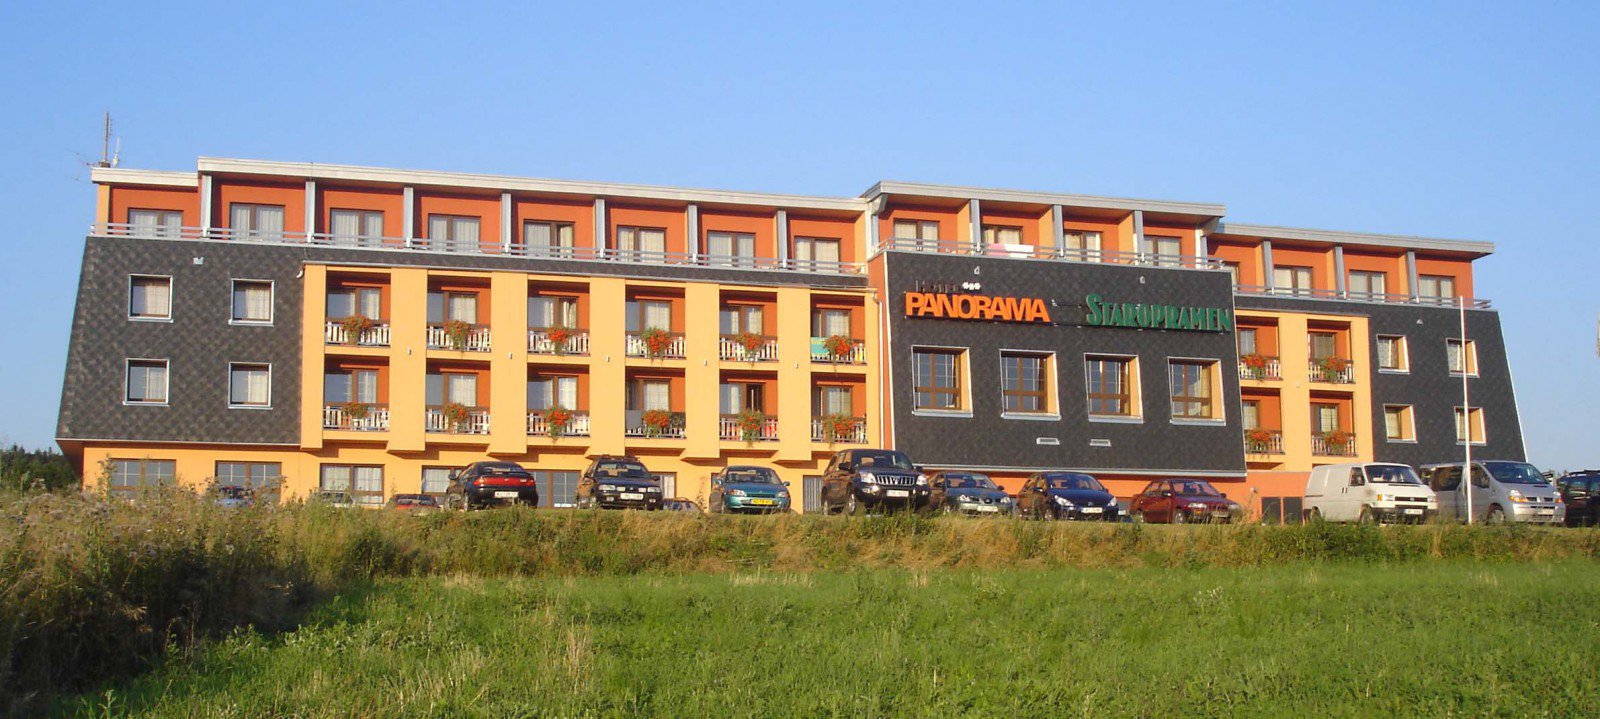 , Wellness Hotel Panorama, Blansko